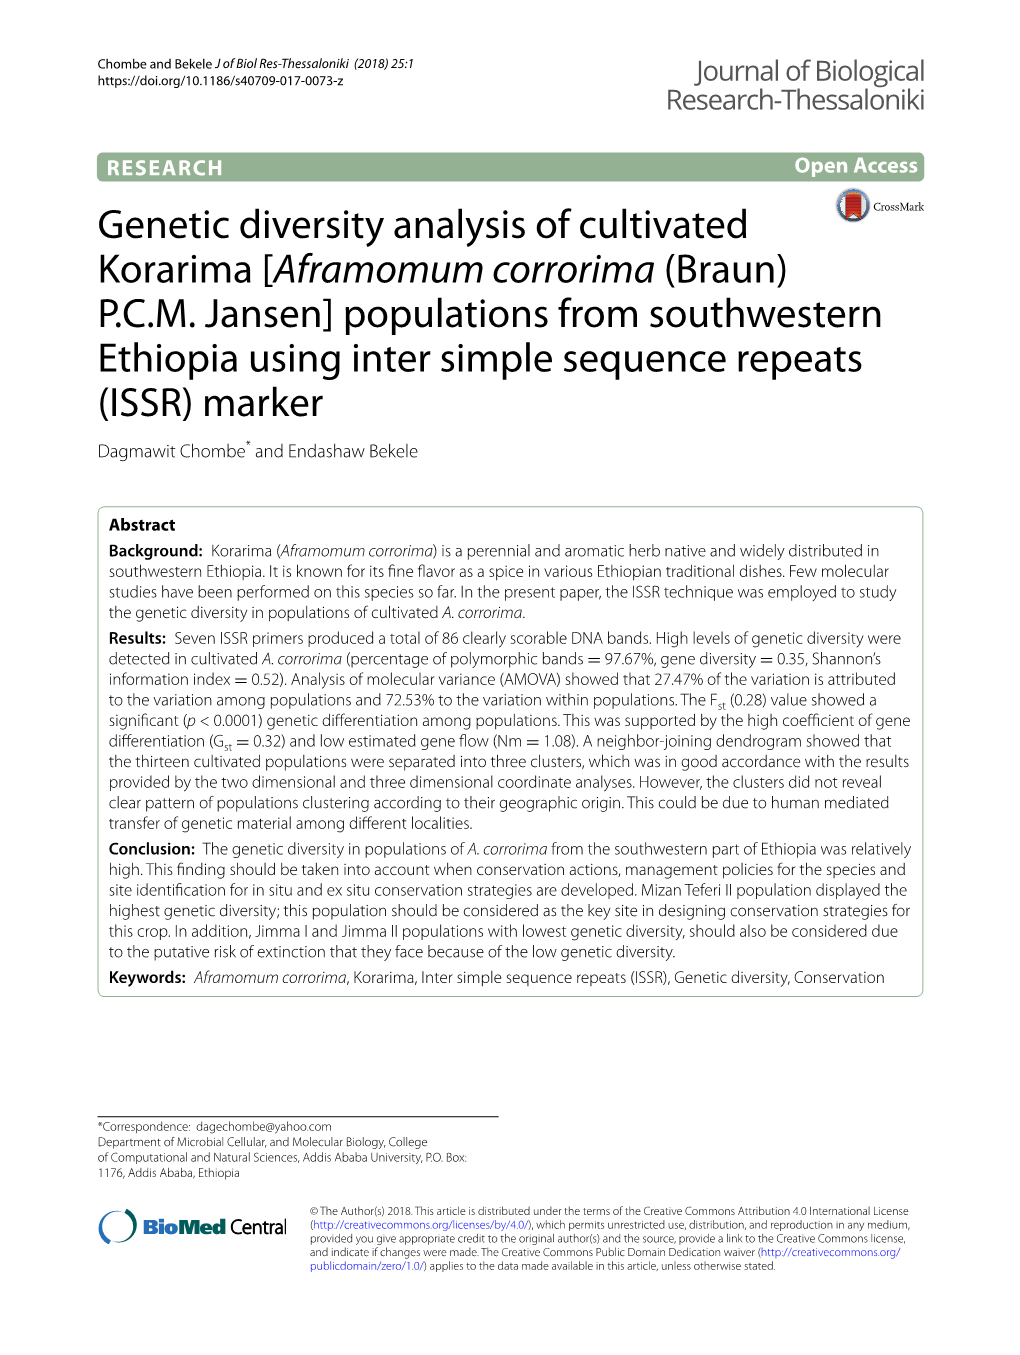 Genetic Diversity Analysis of Cultivated Korarima [Aframomum Corrorima (Braun) P.C.M